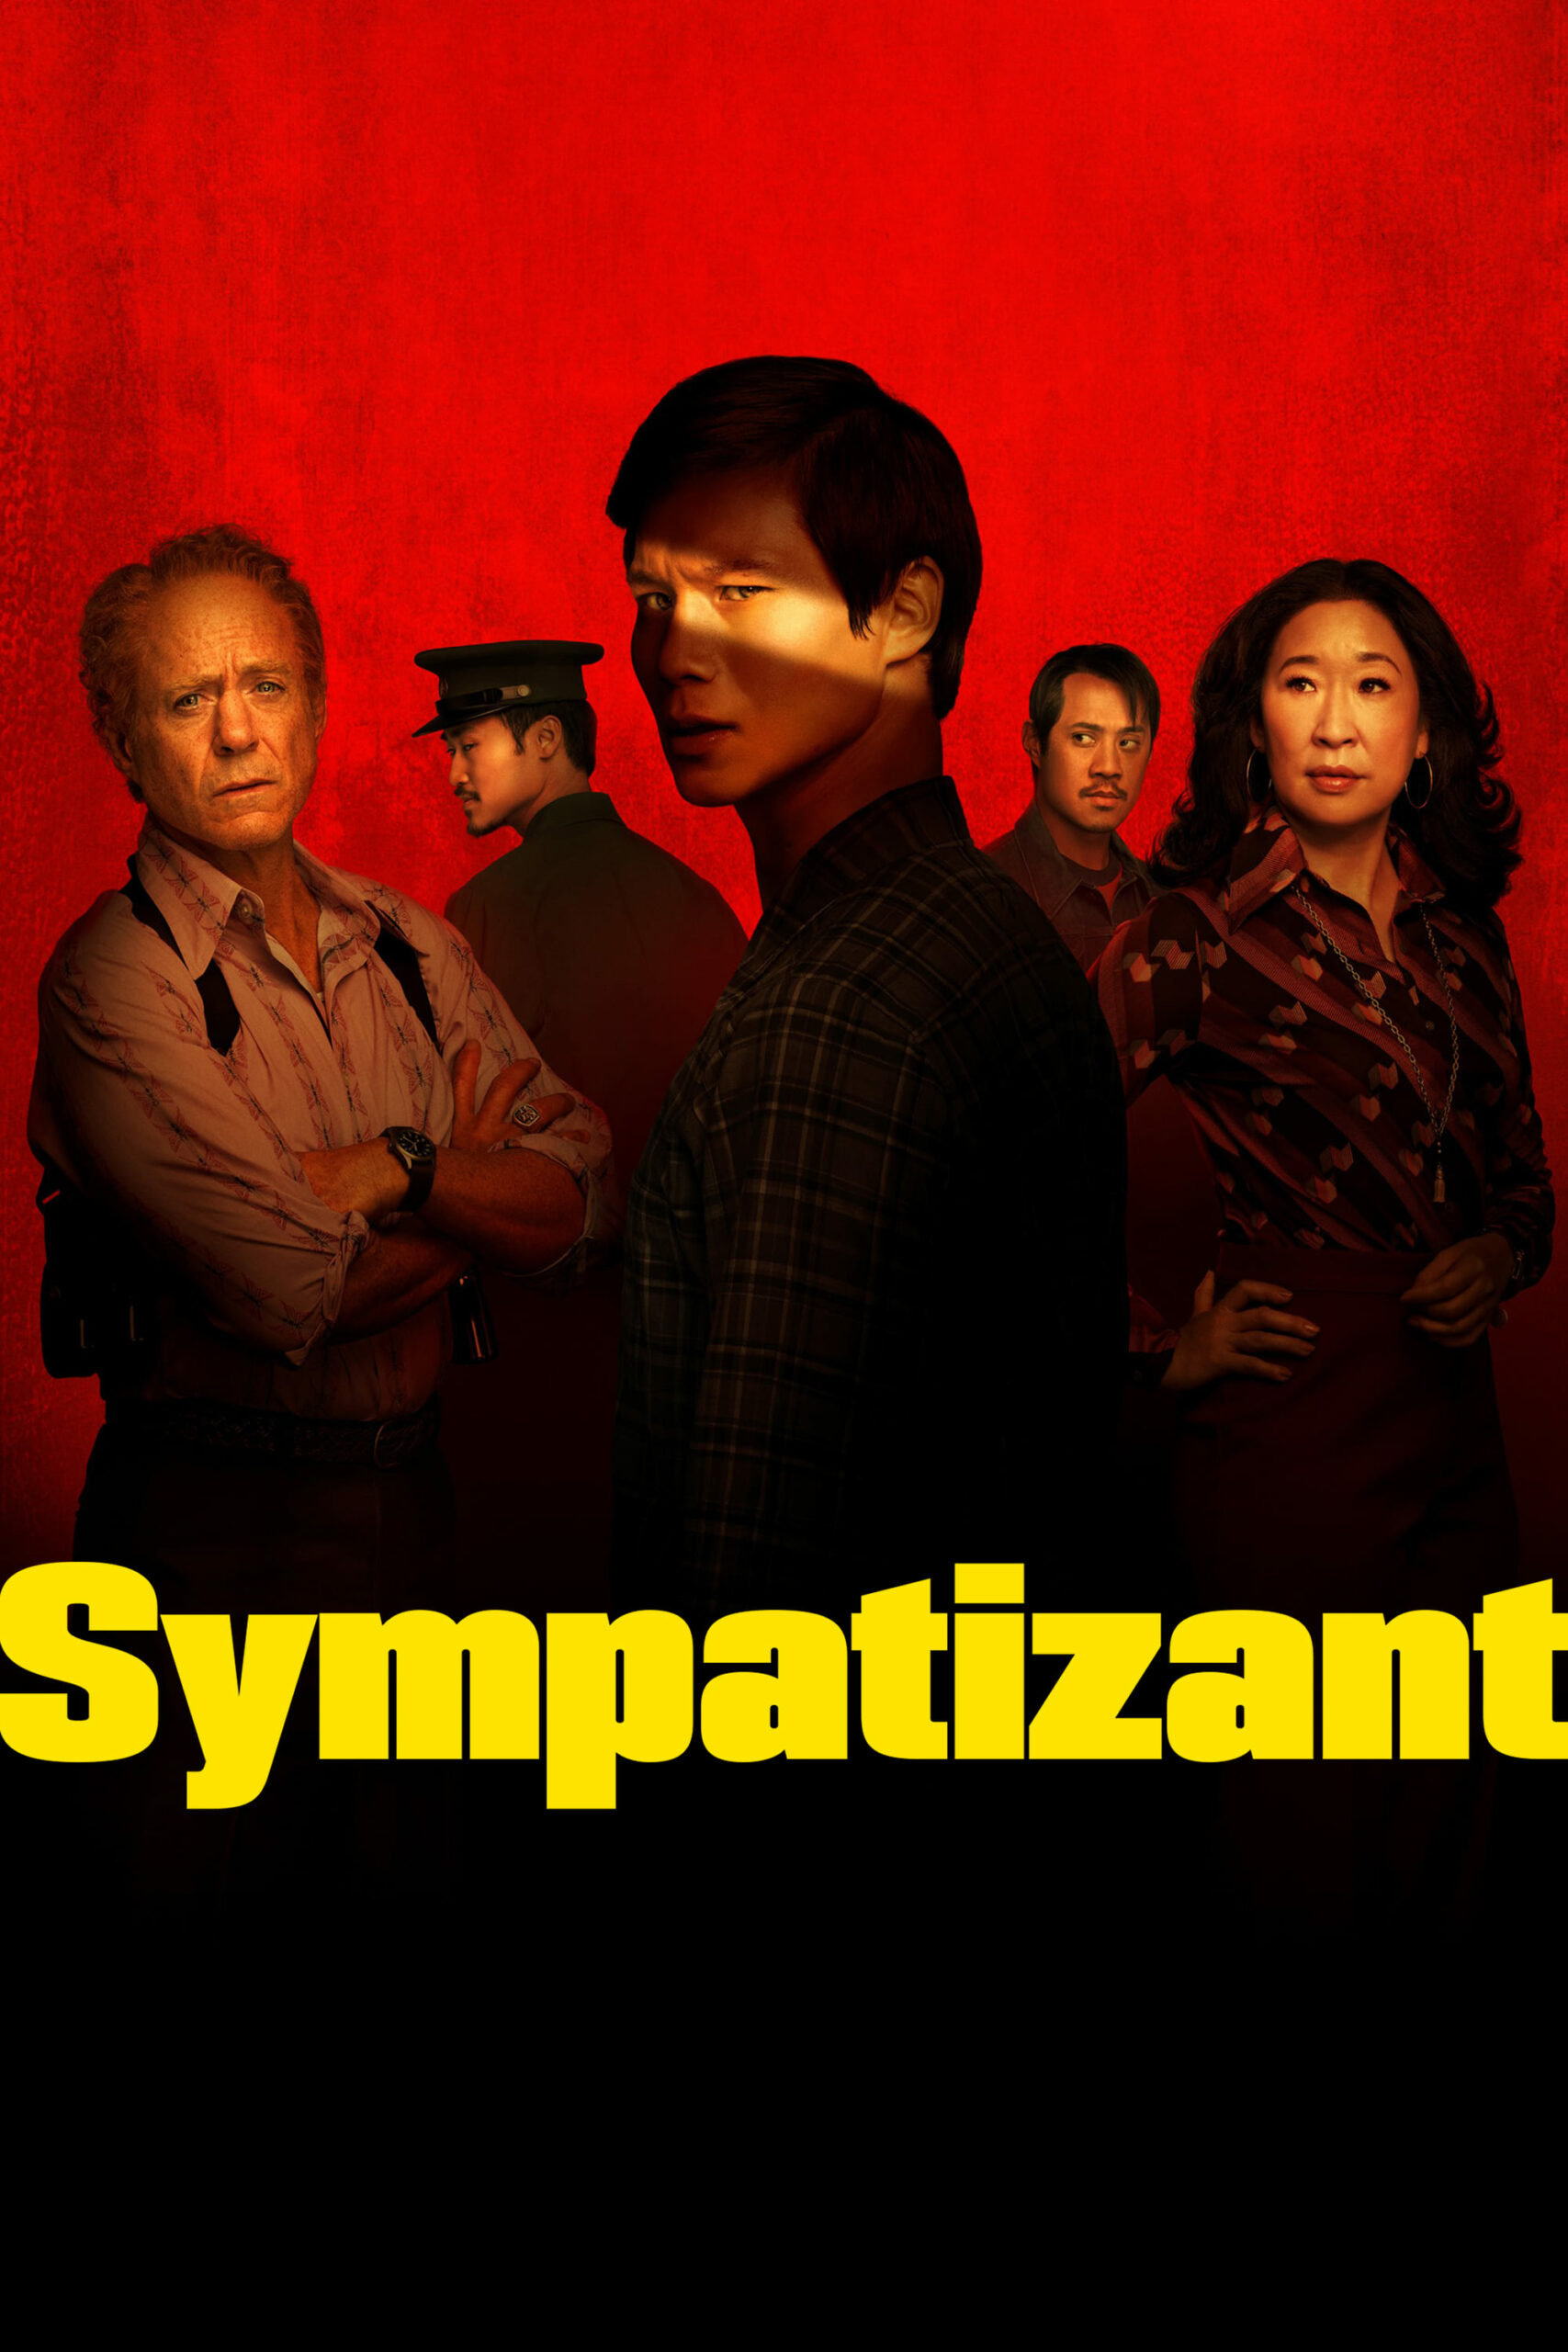 Plakát pro film “Sympatizant”